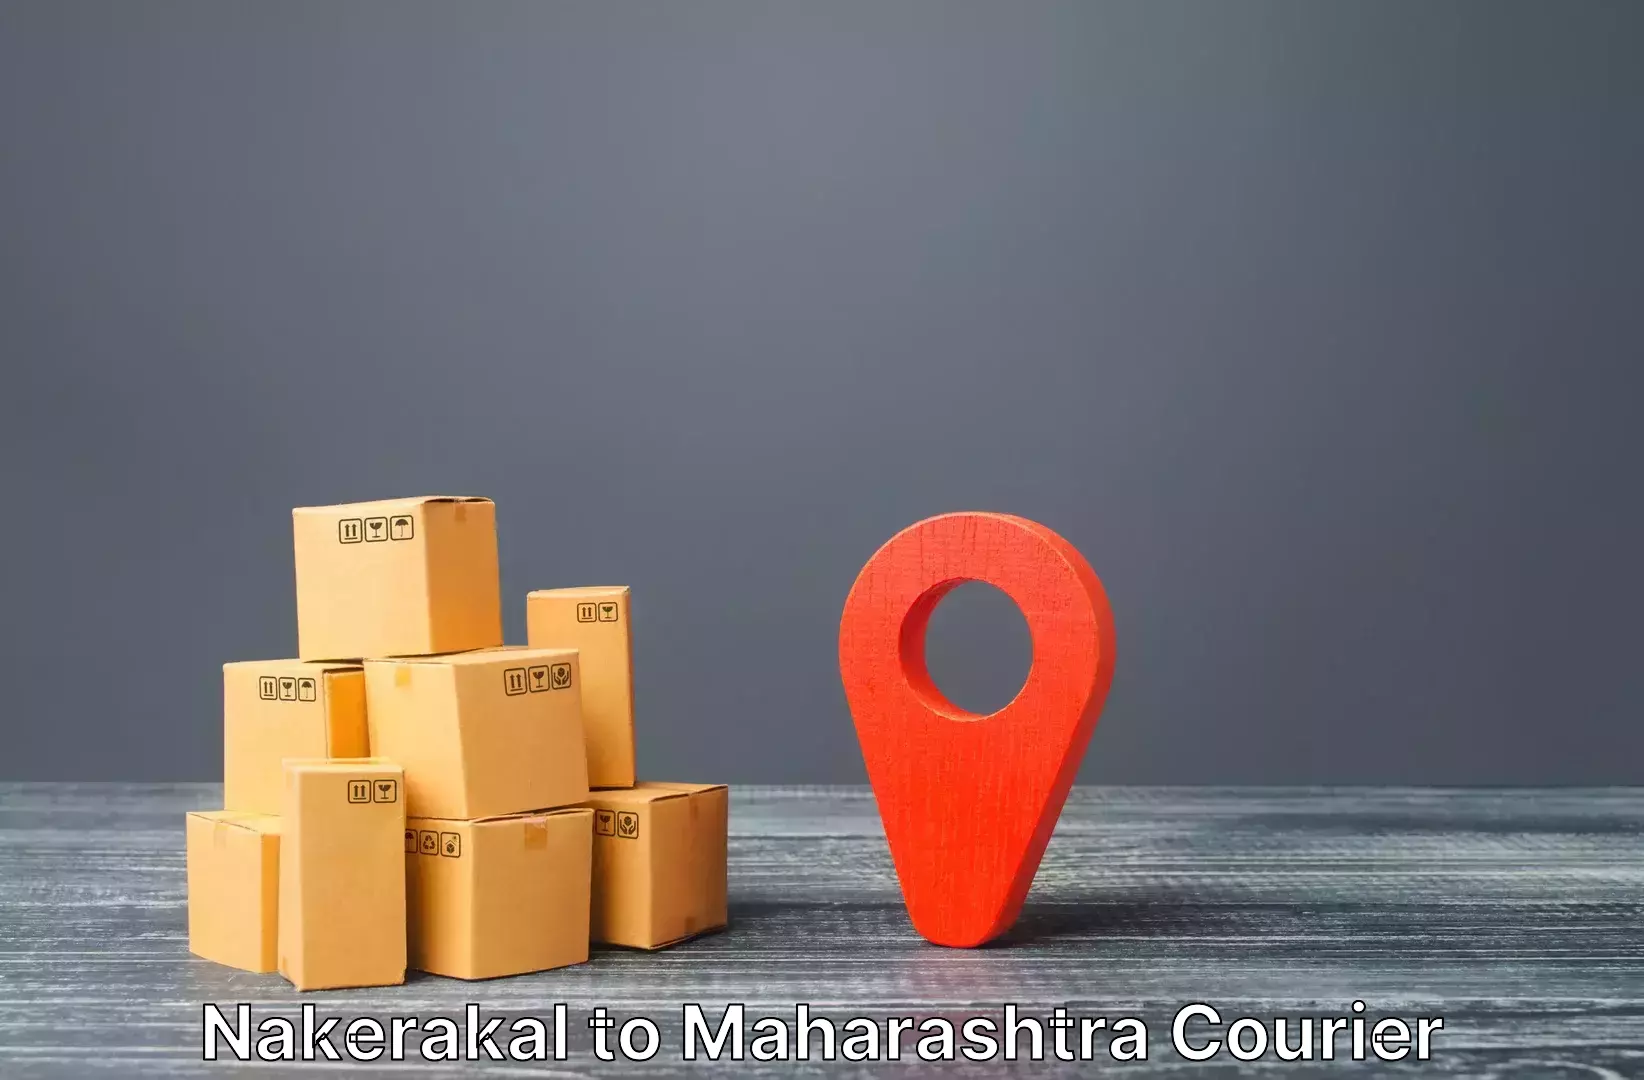 Luggage shipment tracking Nakerakal to Jamner